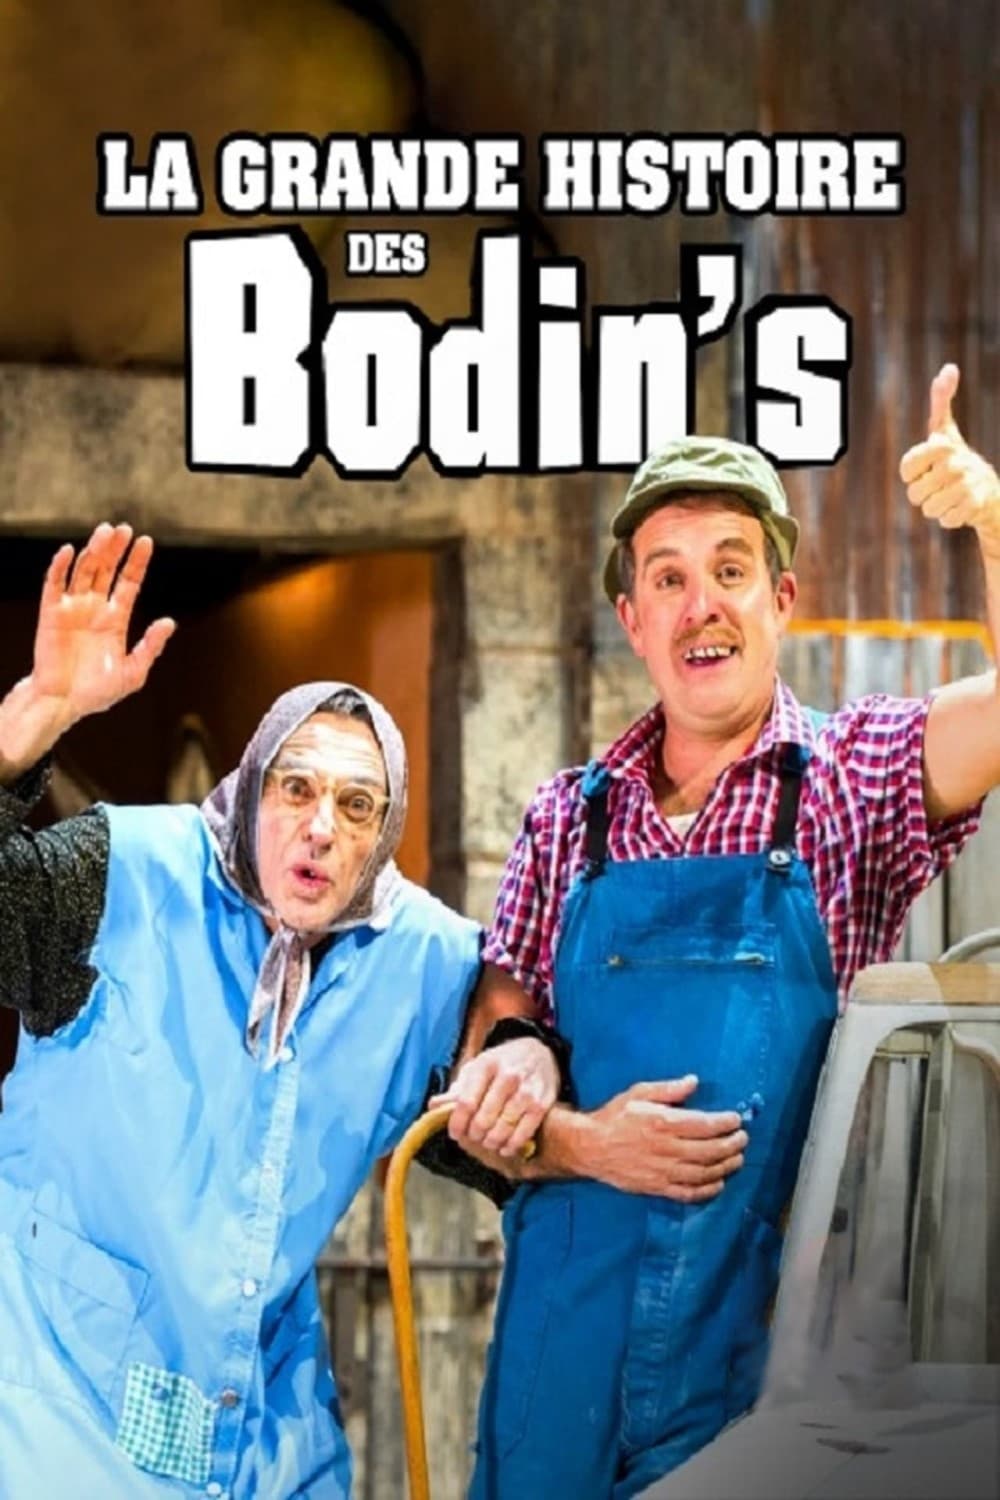 La grande histoire des Bodin's